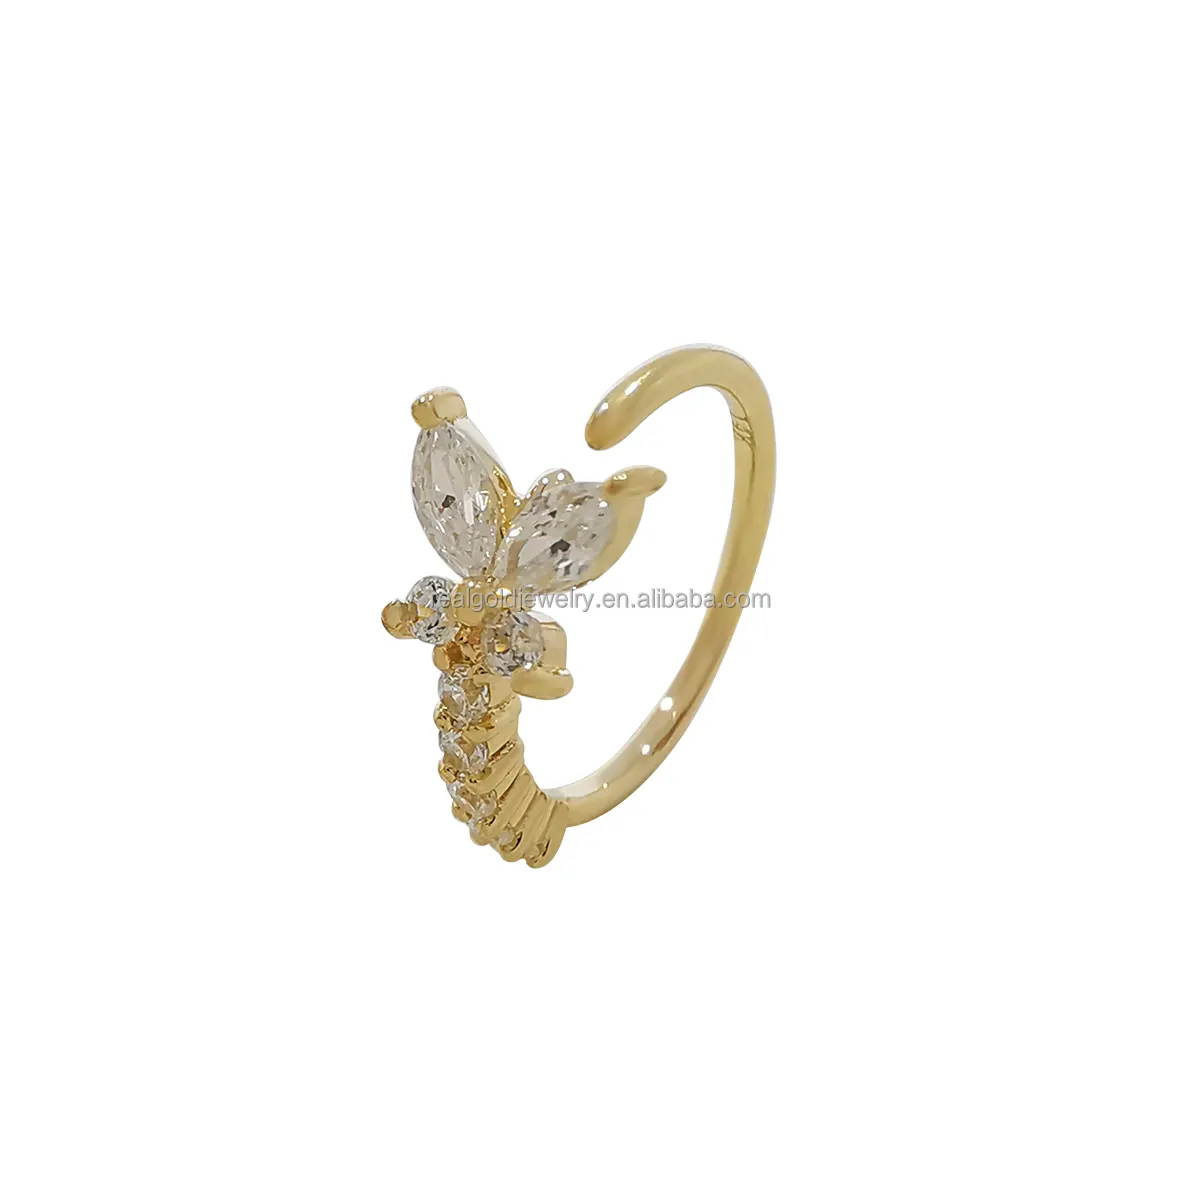 14K oro macizo mariposa nariz Pin pendiente Clip personalizado joyería fina Piercing para el cuerpo para bodas regalos compromisos fiestas